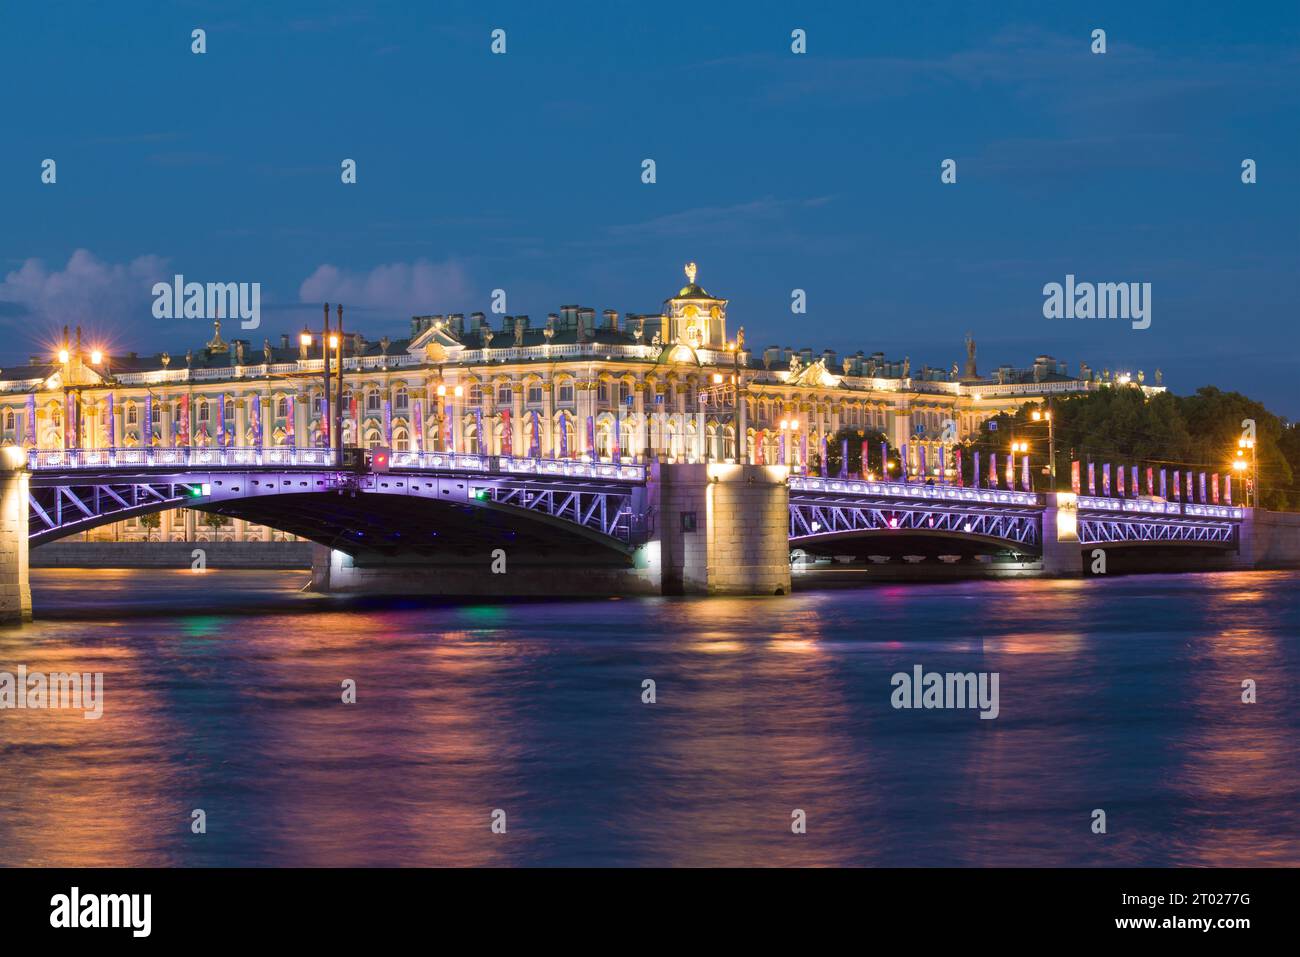 ST. PETERSBURG, RUSSLAND - 02. JUNI 2018: Palastbrücke vor dem Hintergrund des Winterpalastes in der Weißen Nacht Stockfoto